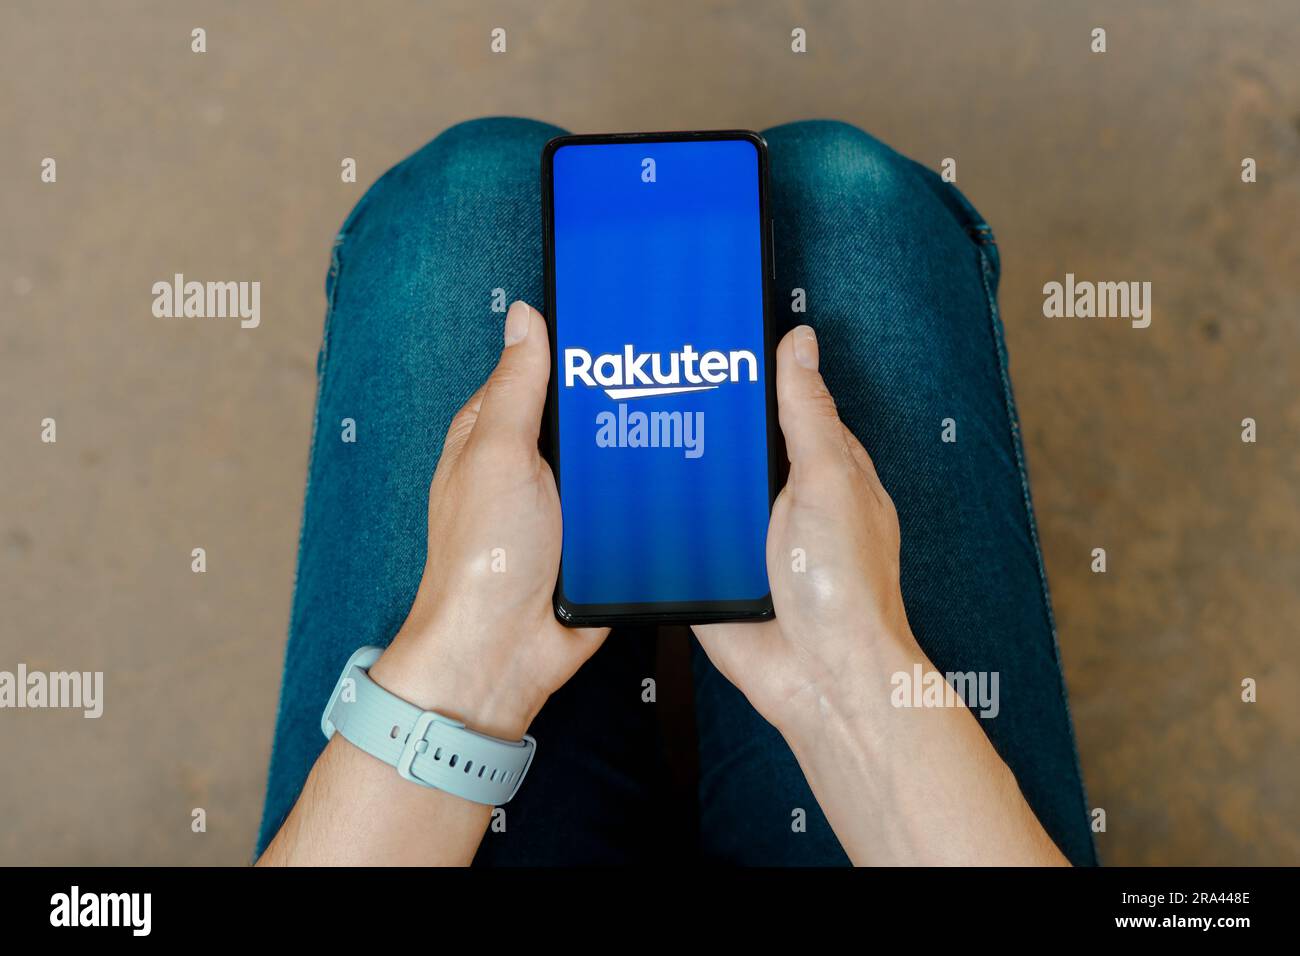 In questa immagine, il logo Rakuten viene visualizzato sullo schermo di uno smartphone. Foto Stock